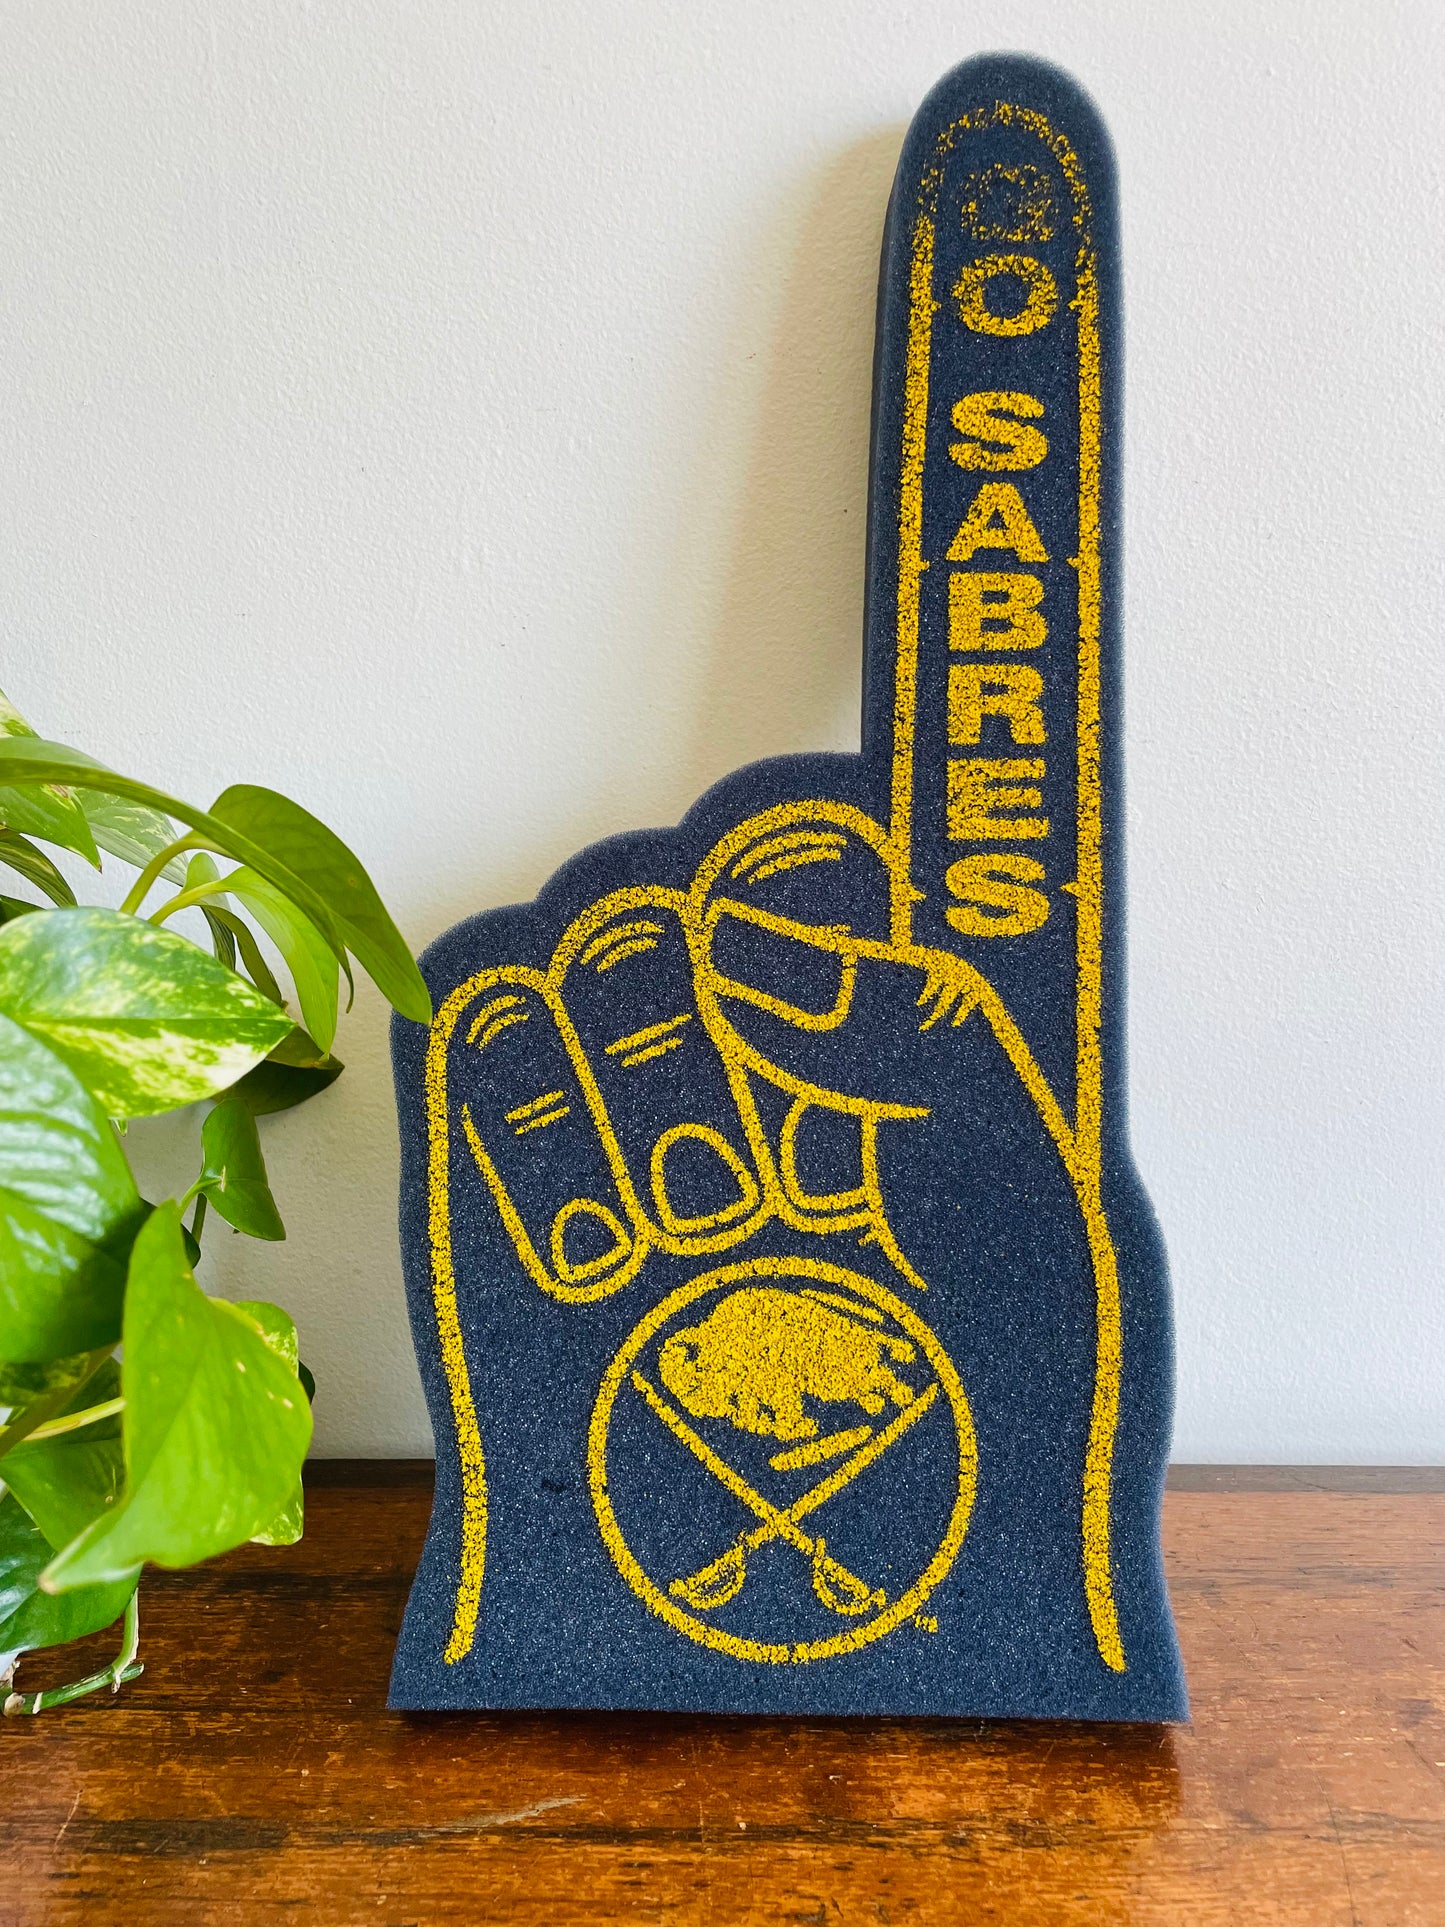 Go Sabres - Buffalo Sabres Foam Finger Hand